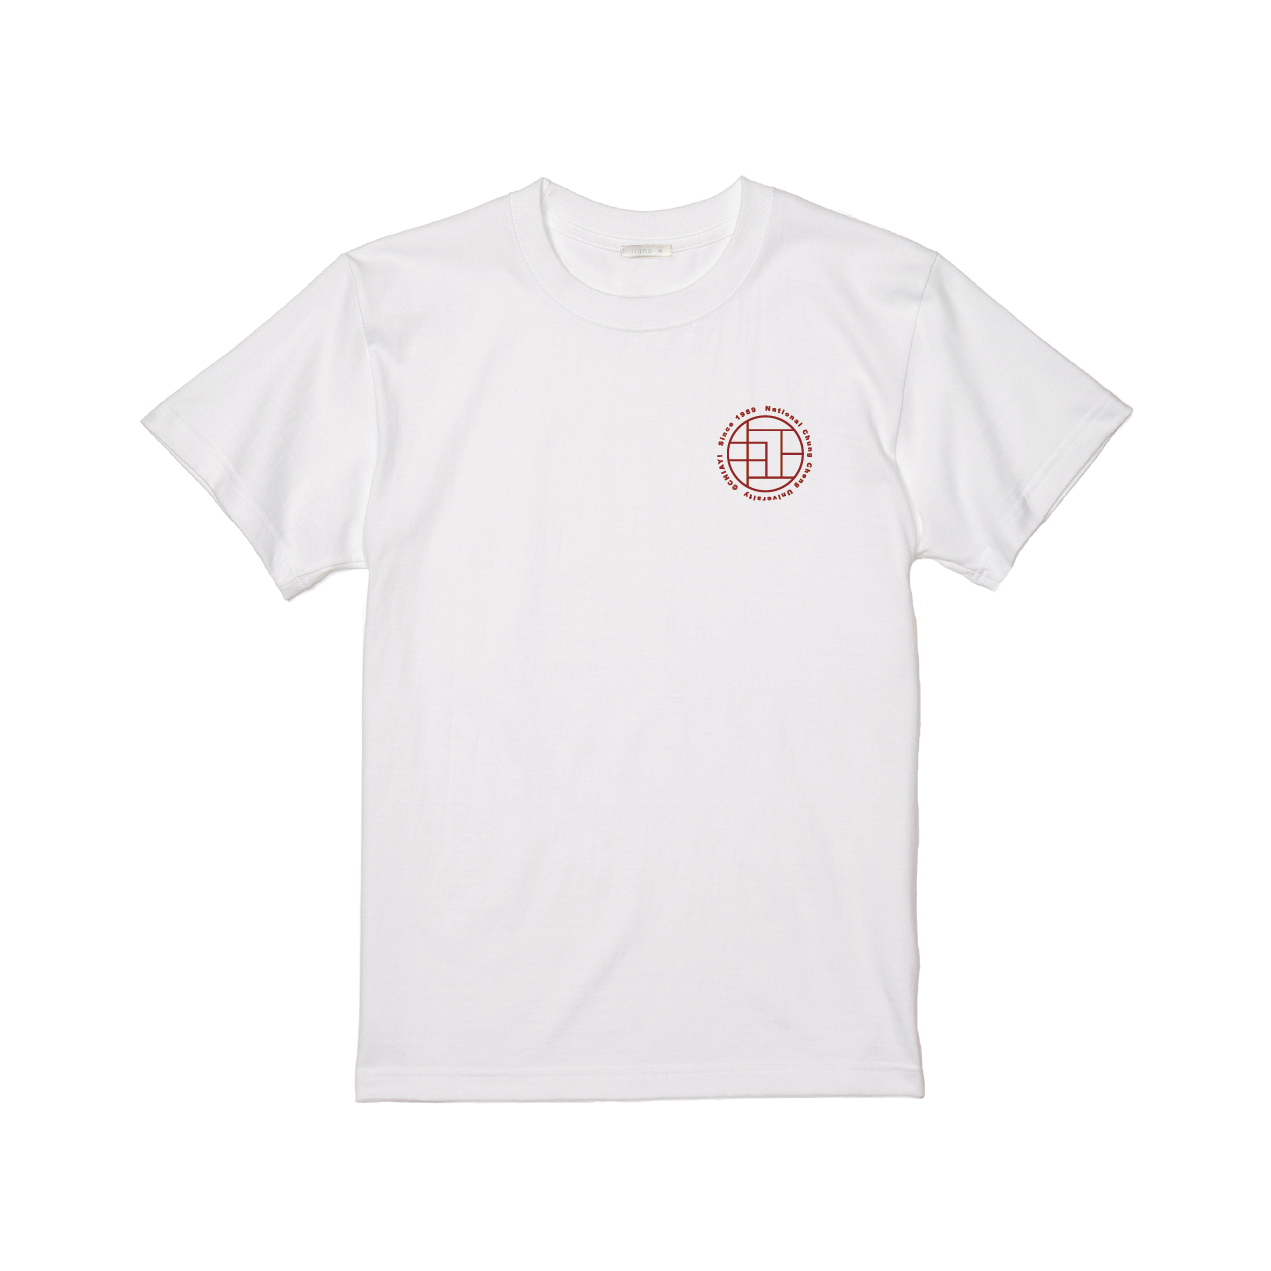 【預購】草原設計 CCU 經典 T-shirt 窗花款 (共三款)